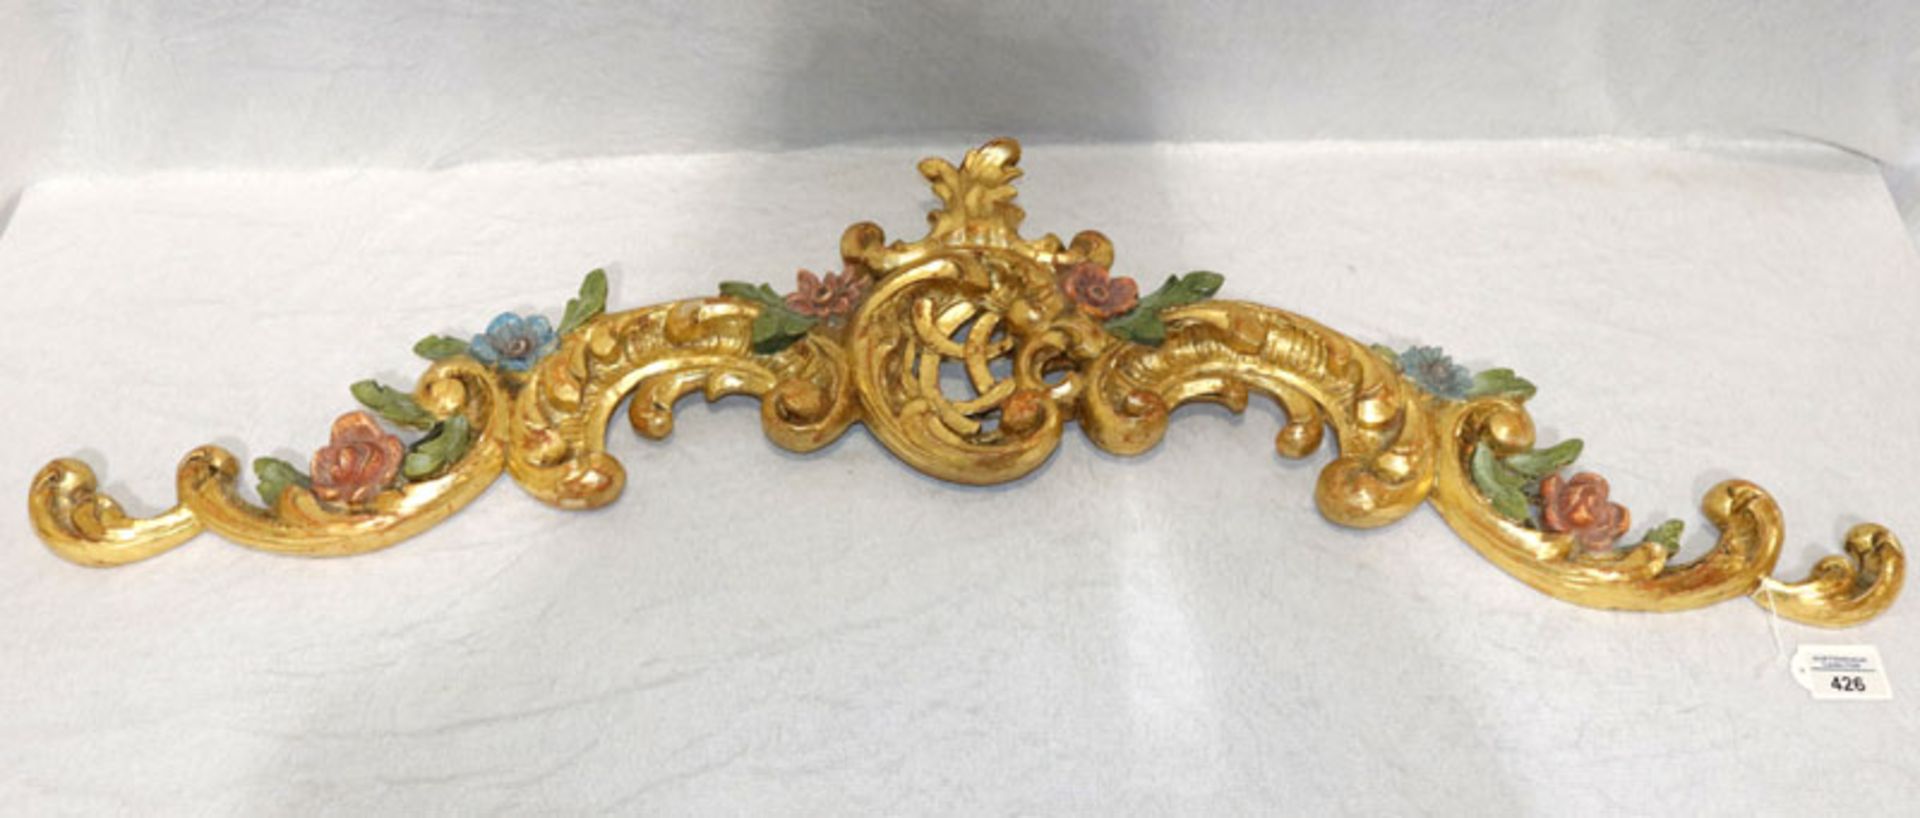 Supraporta, aus Holz geschnitzt mit Floraldekor, bunt/gold gefaßt, Farbablösungen, H 30 cm, B 100 c